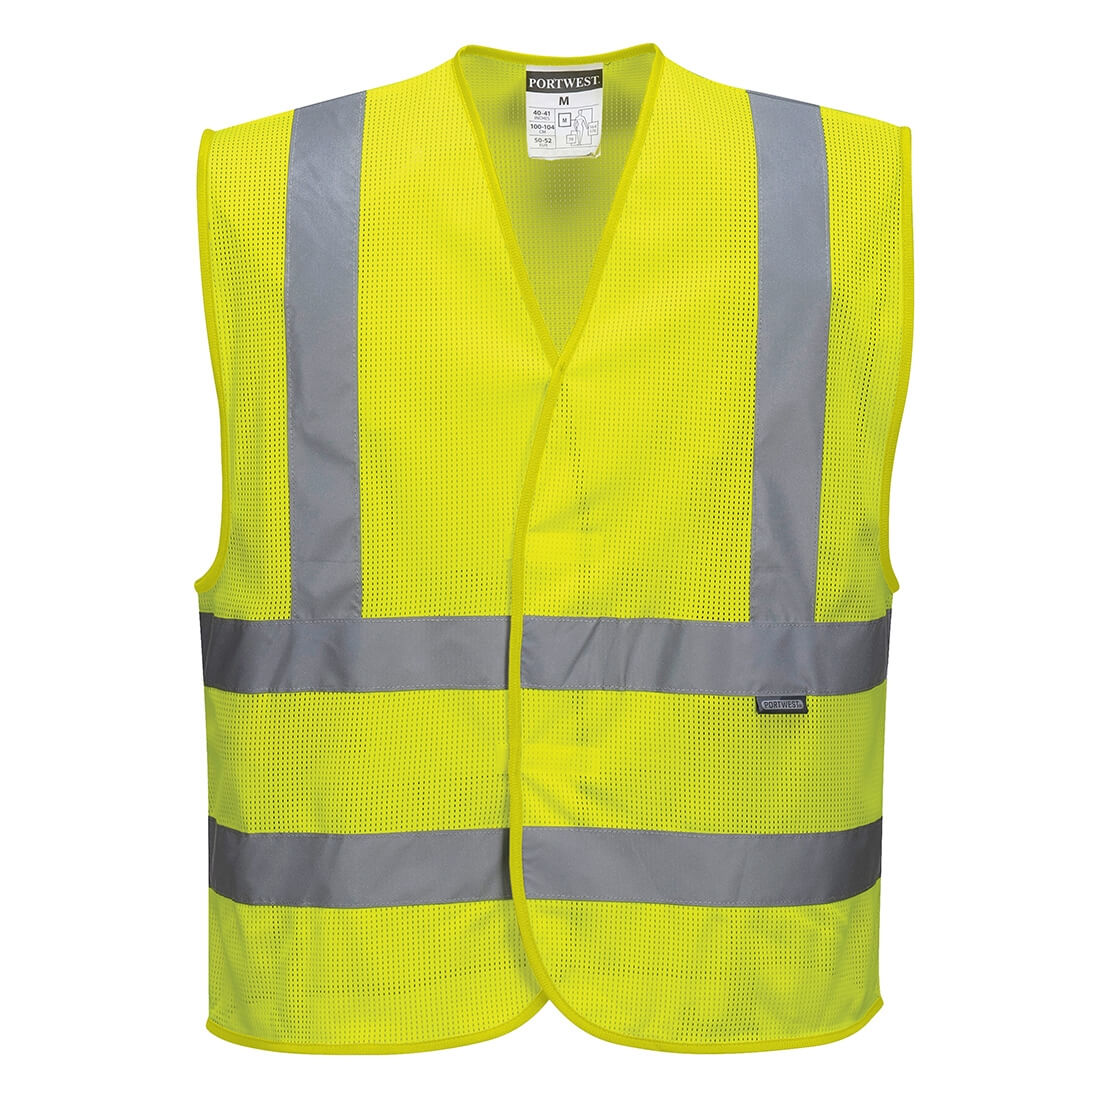 MeshAir Band & Brace Vest - Safetywear